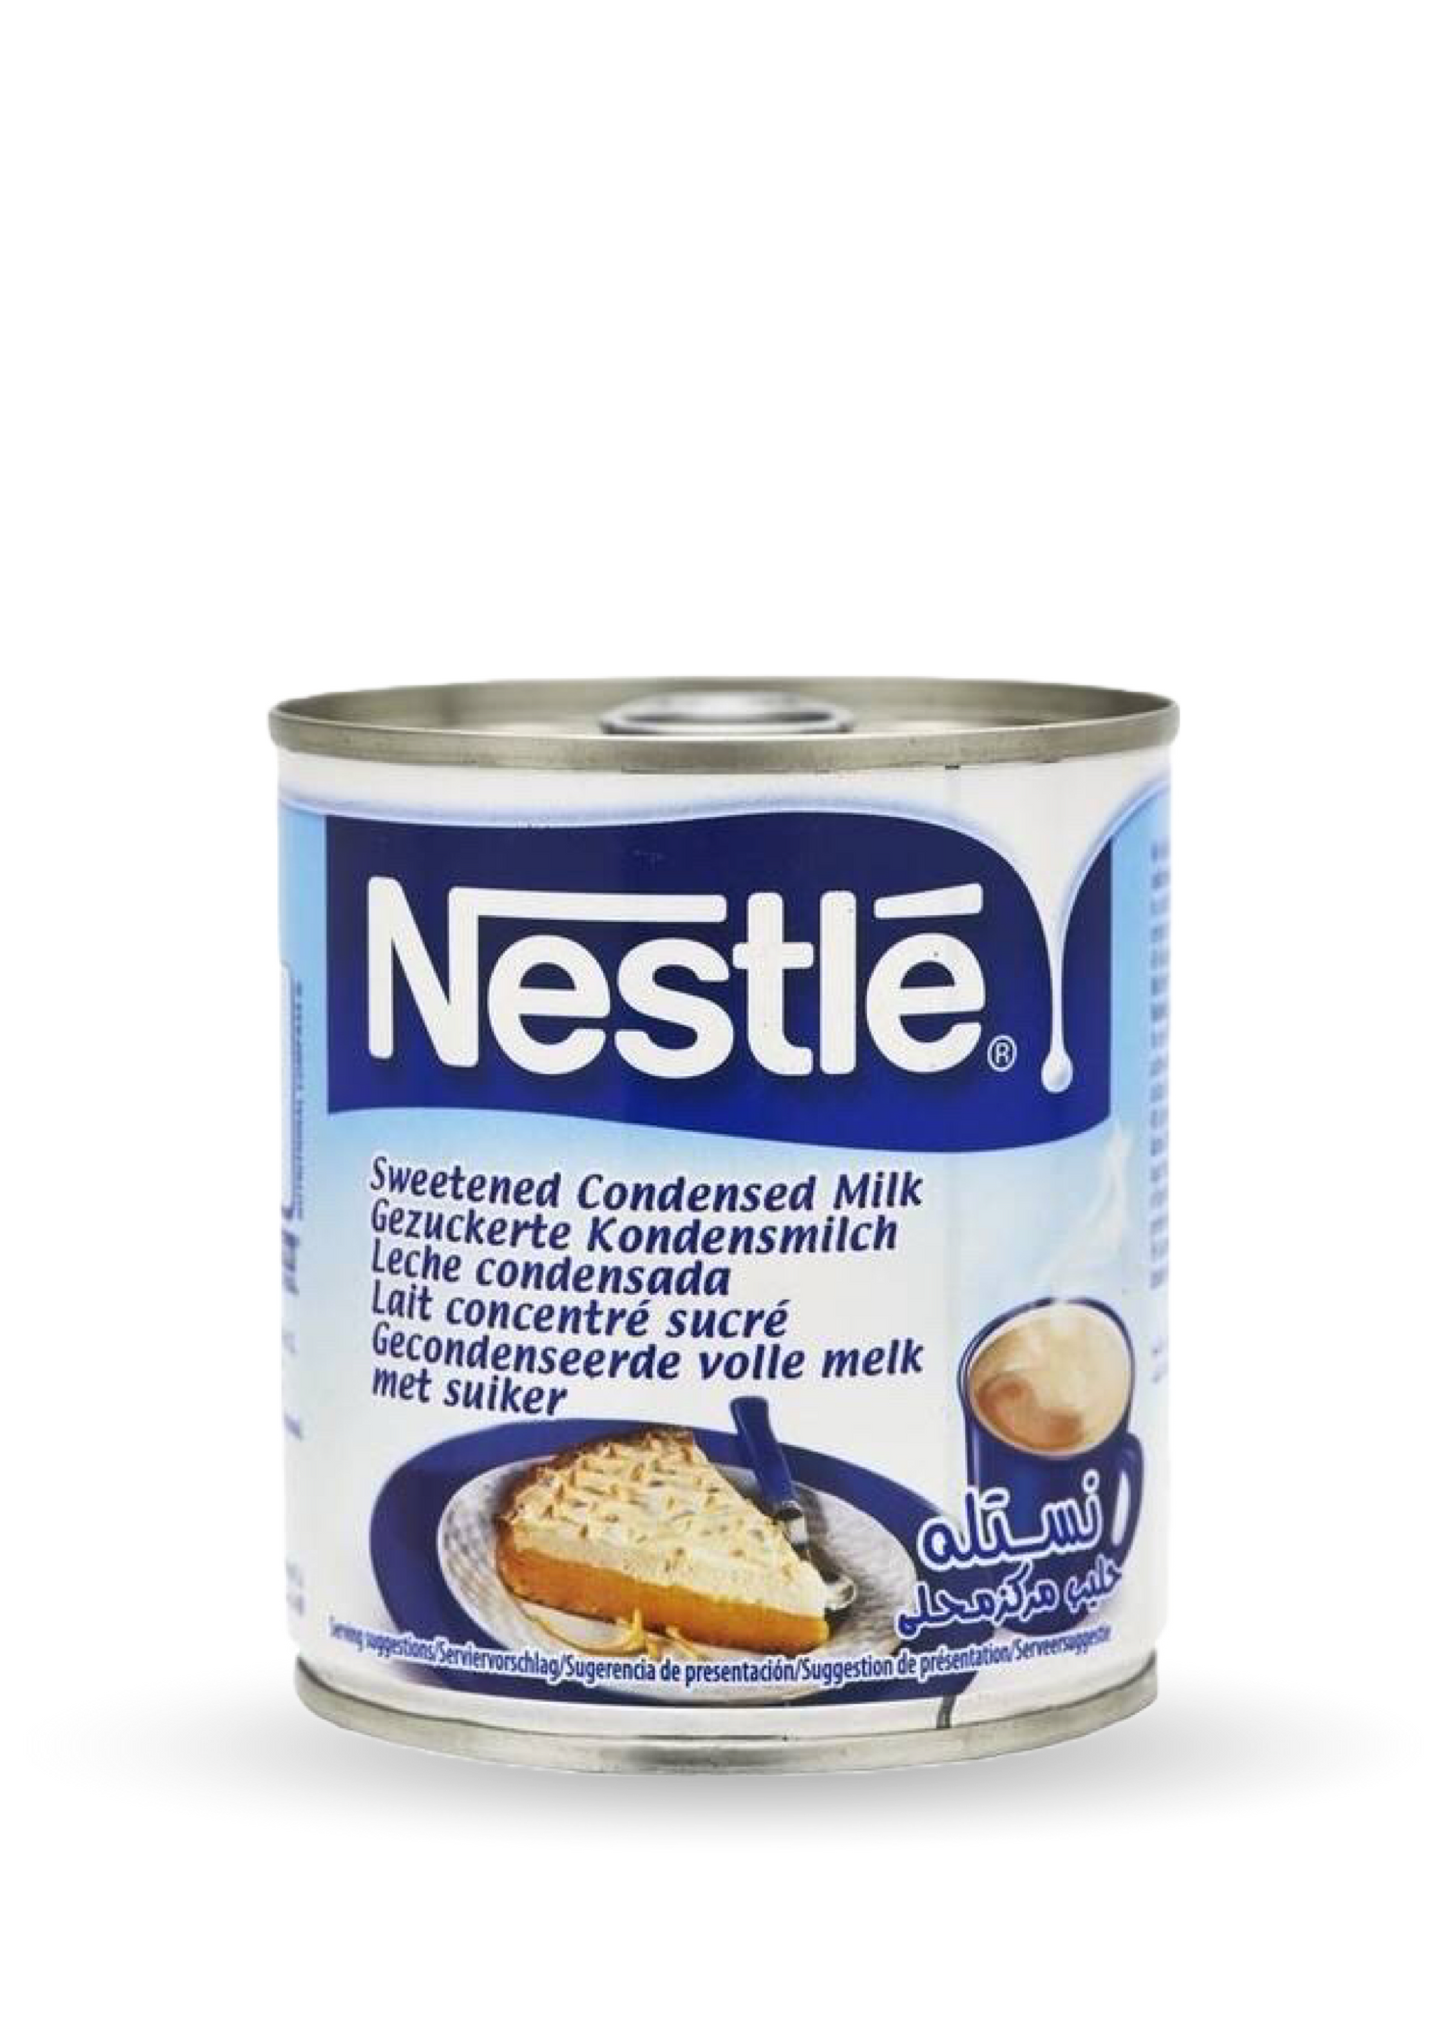 Nestlé | Zaslađeno kondenzirano mlijeko